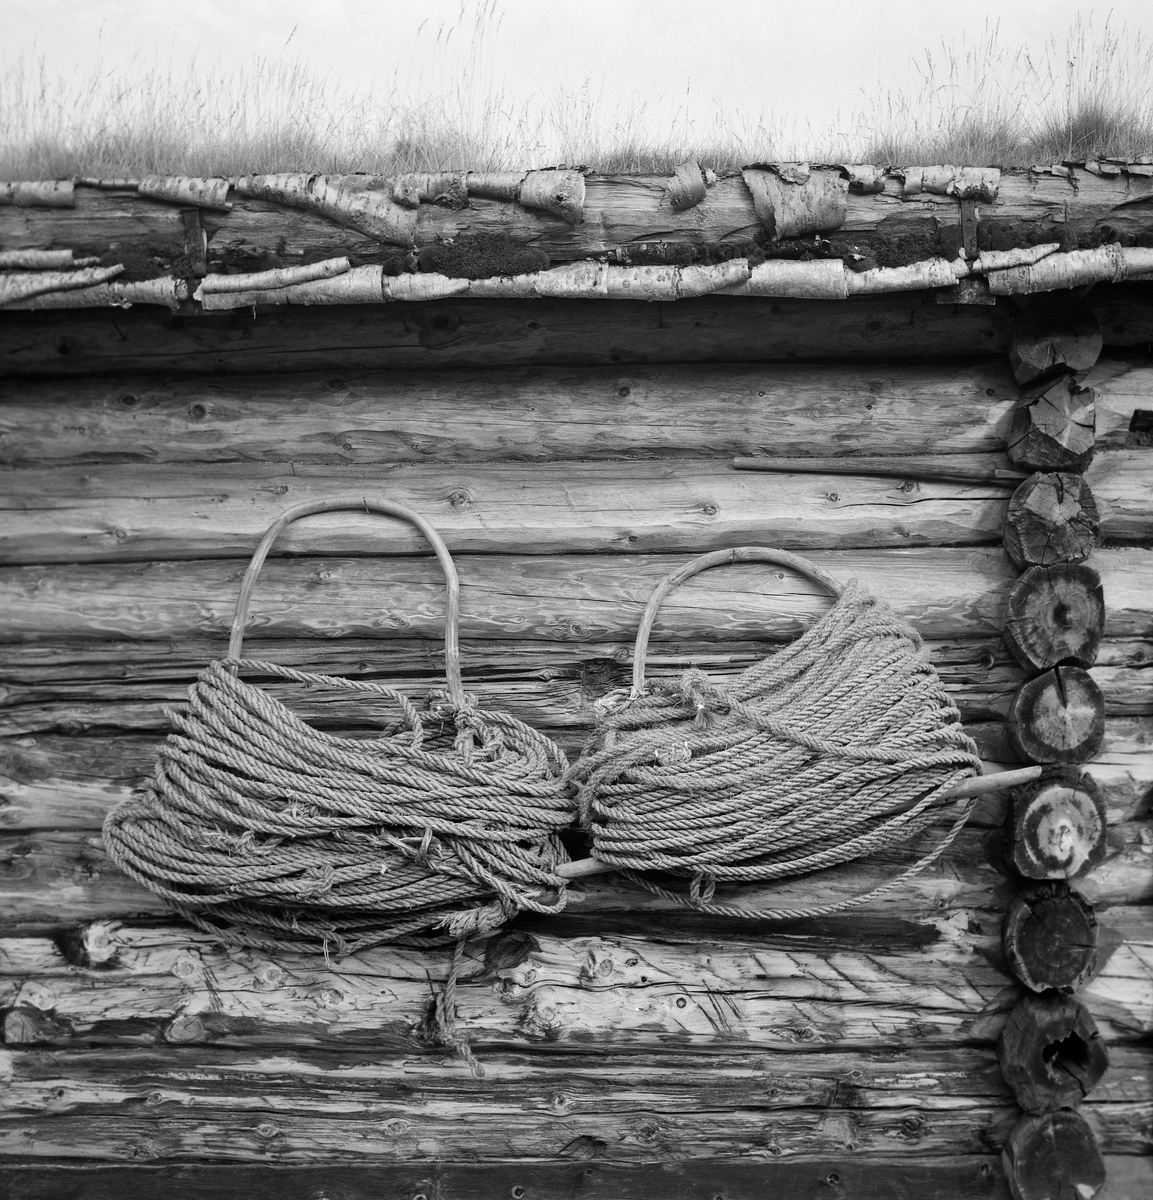 To tausuler på tømmervegg på Fiskevollen ved Sølensjøen i Øvre Rendalen i Hedmark.  En tausule var lagd av ei fjøl, som det var tappet en tynn bjørke- eller seljestamme som var bøyd i U-form.  Inntappingspunktene ble plassert noe innenfor den nevnte fjølas ender.  På den måten kunne tauet kveiles rundt den U-formete bøyla, hvor fjøla hindret det fra å skli av igjen når tausulene ble båret eller hengt til tørk, som her.  I dette tilfellet hang tausulene på ytterveggen på den laftete «kjellen» til Haagen Hangaard (1889-1989).  En kjell er betegnelsen på redskapshusene som ble brukt i innlandsfiskeværet på Fiskevollen.  Slike hus ble oppført av laftetømmer.  De hadde rektangulært grunnplan med ett rom, som hadde inngang midt på den ene gavlveggen, ellers ingen dører eller vinduer.  Takene var, som på andre tradisjonelle hus på Sølensjøen, tekket med never og torv. 